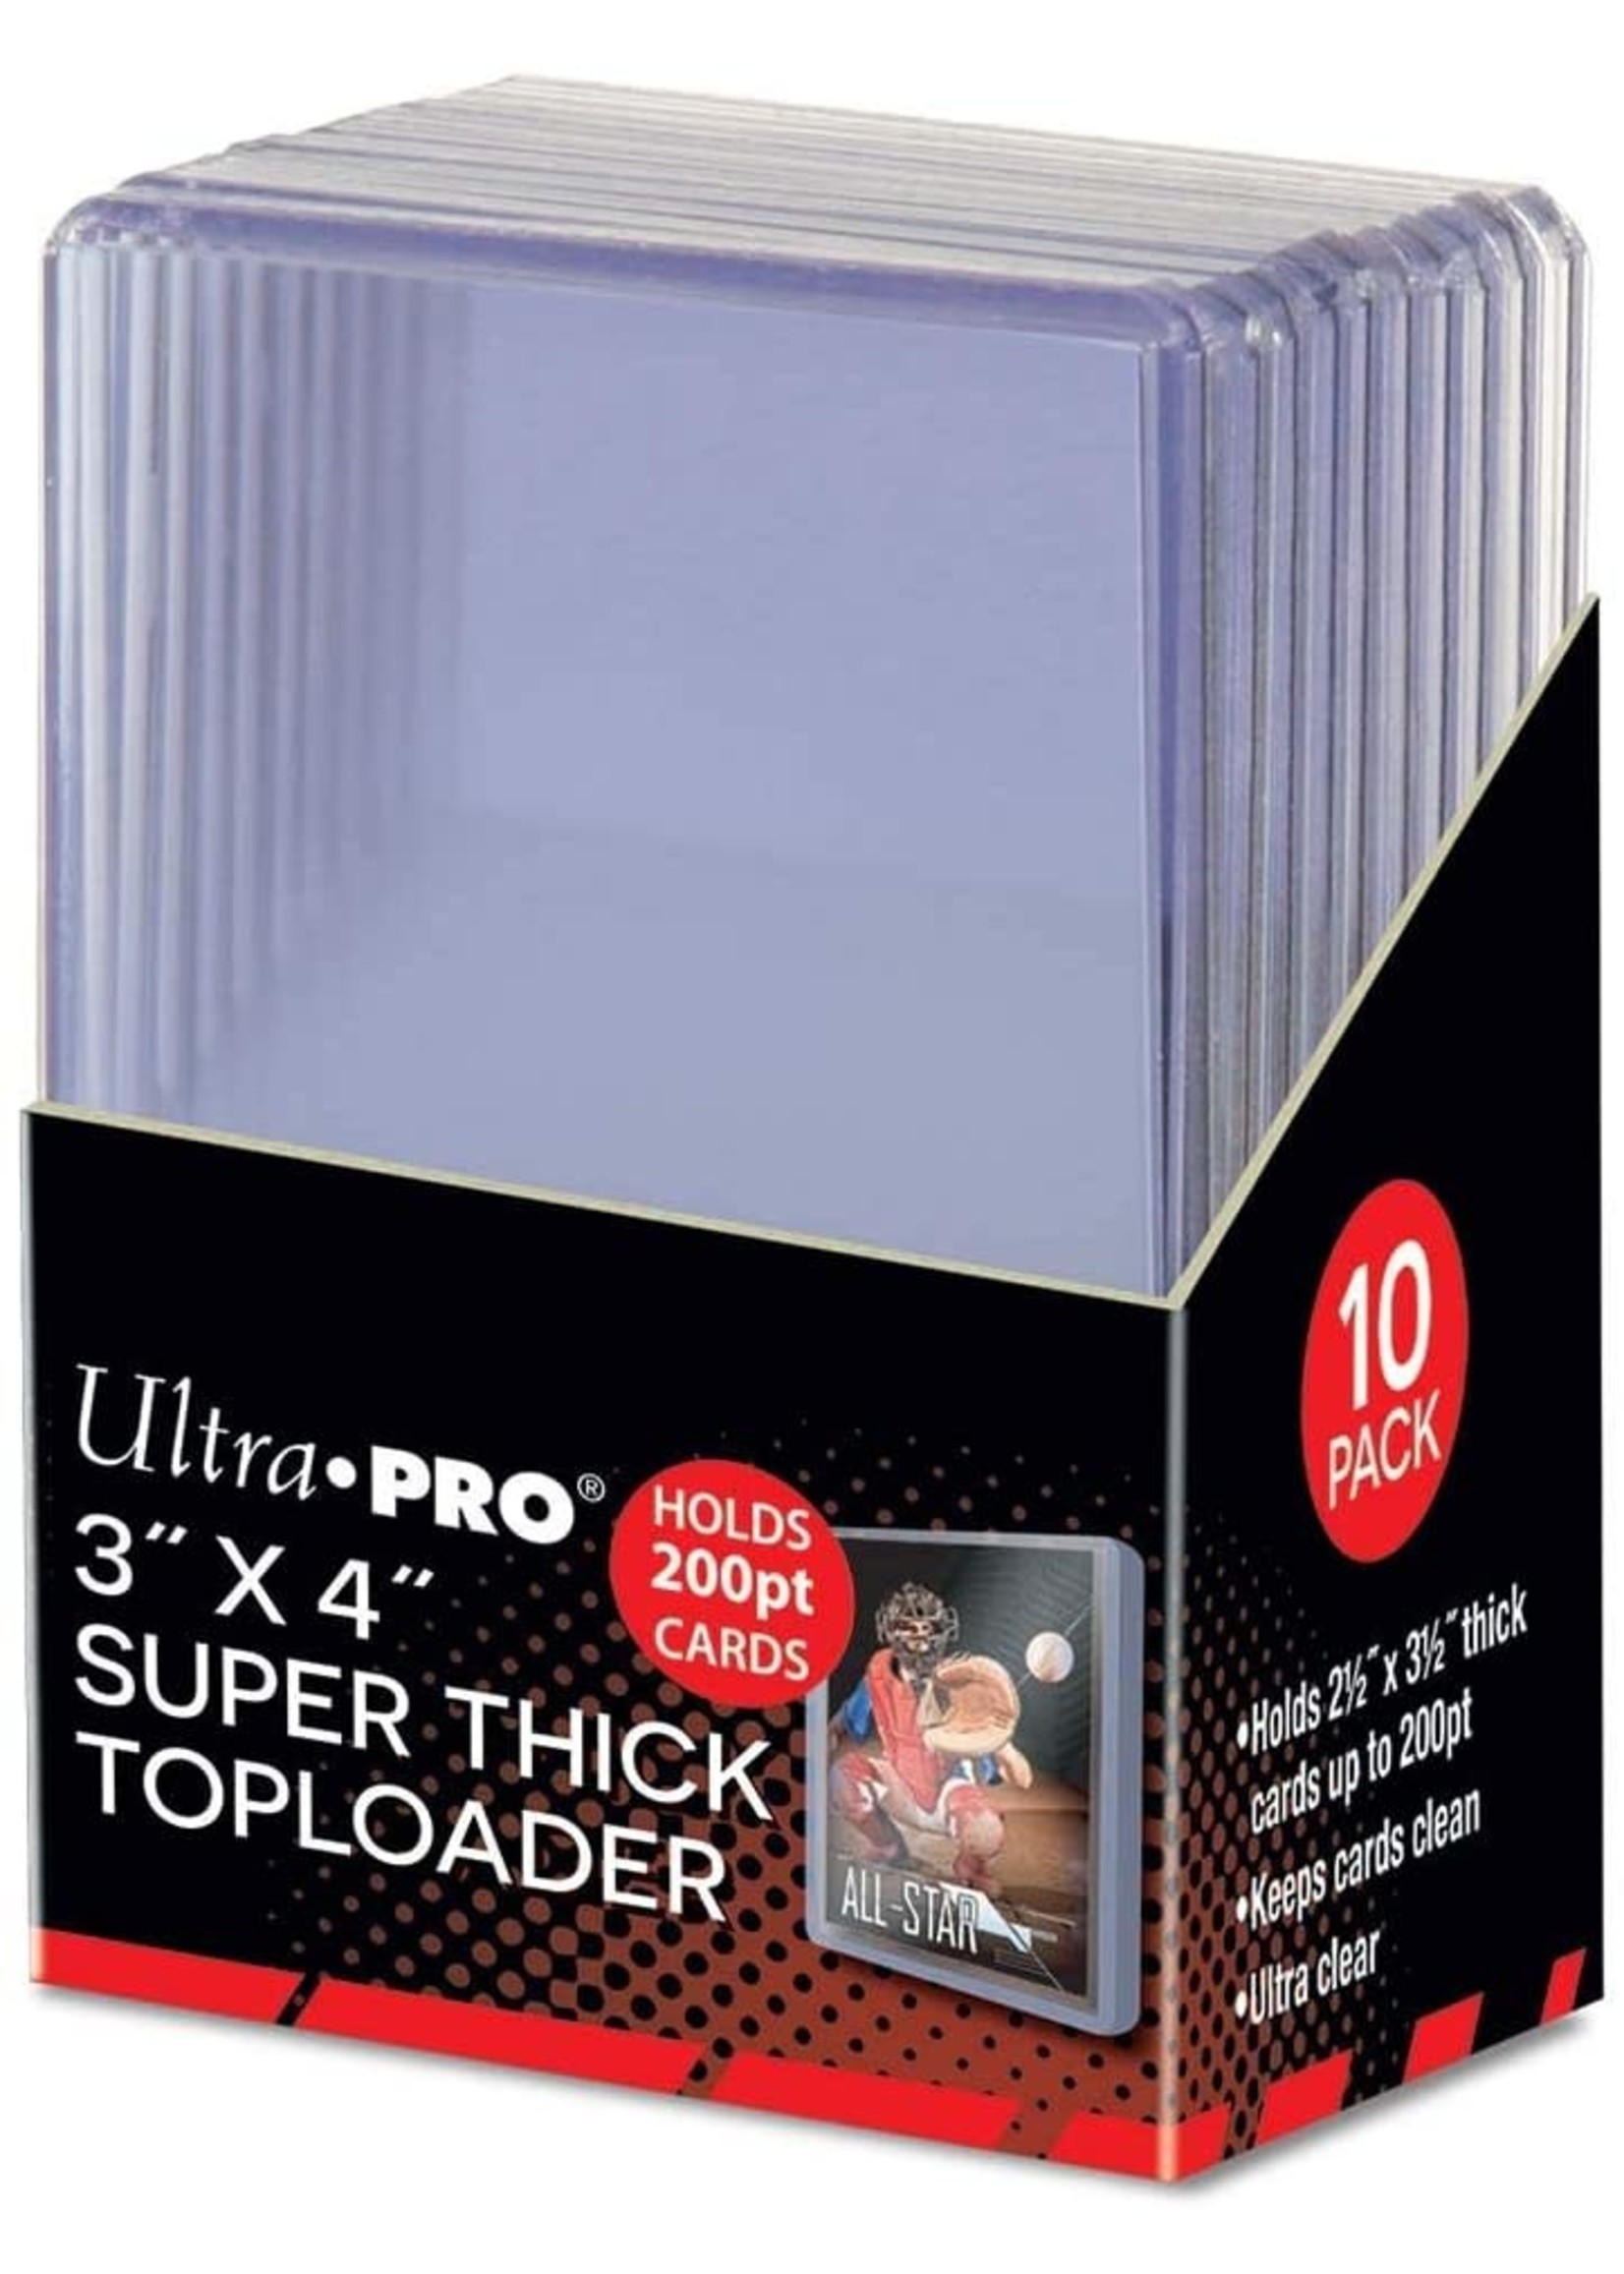 Ultra Pro Super Thick Toploader  200pt